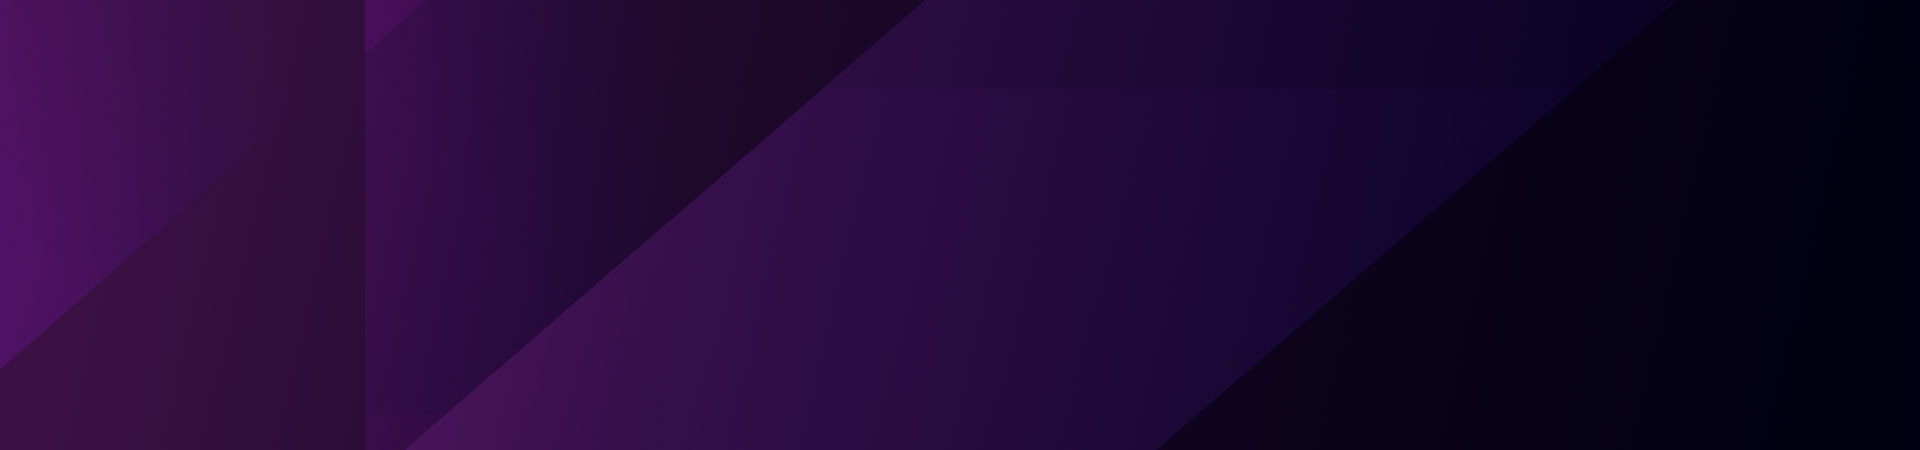 Topstage_CSR_purple_main.jpg